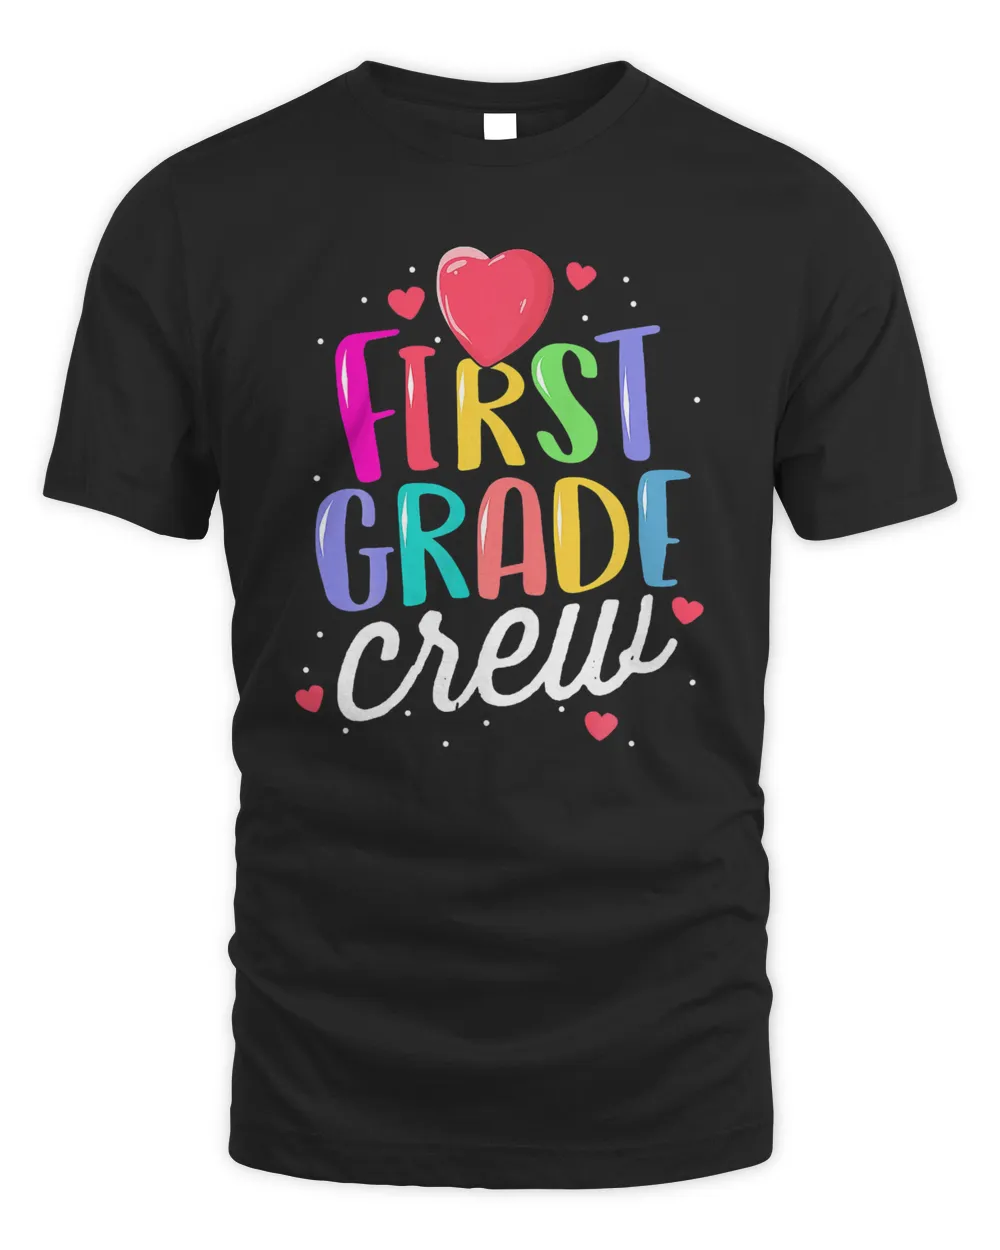 First Grade Teacher T-Shirt First Day School 1st Grade Crew